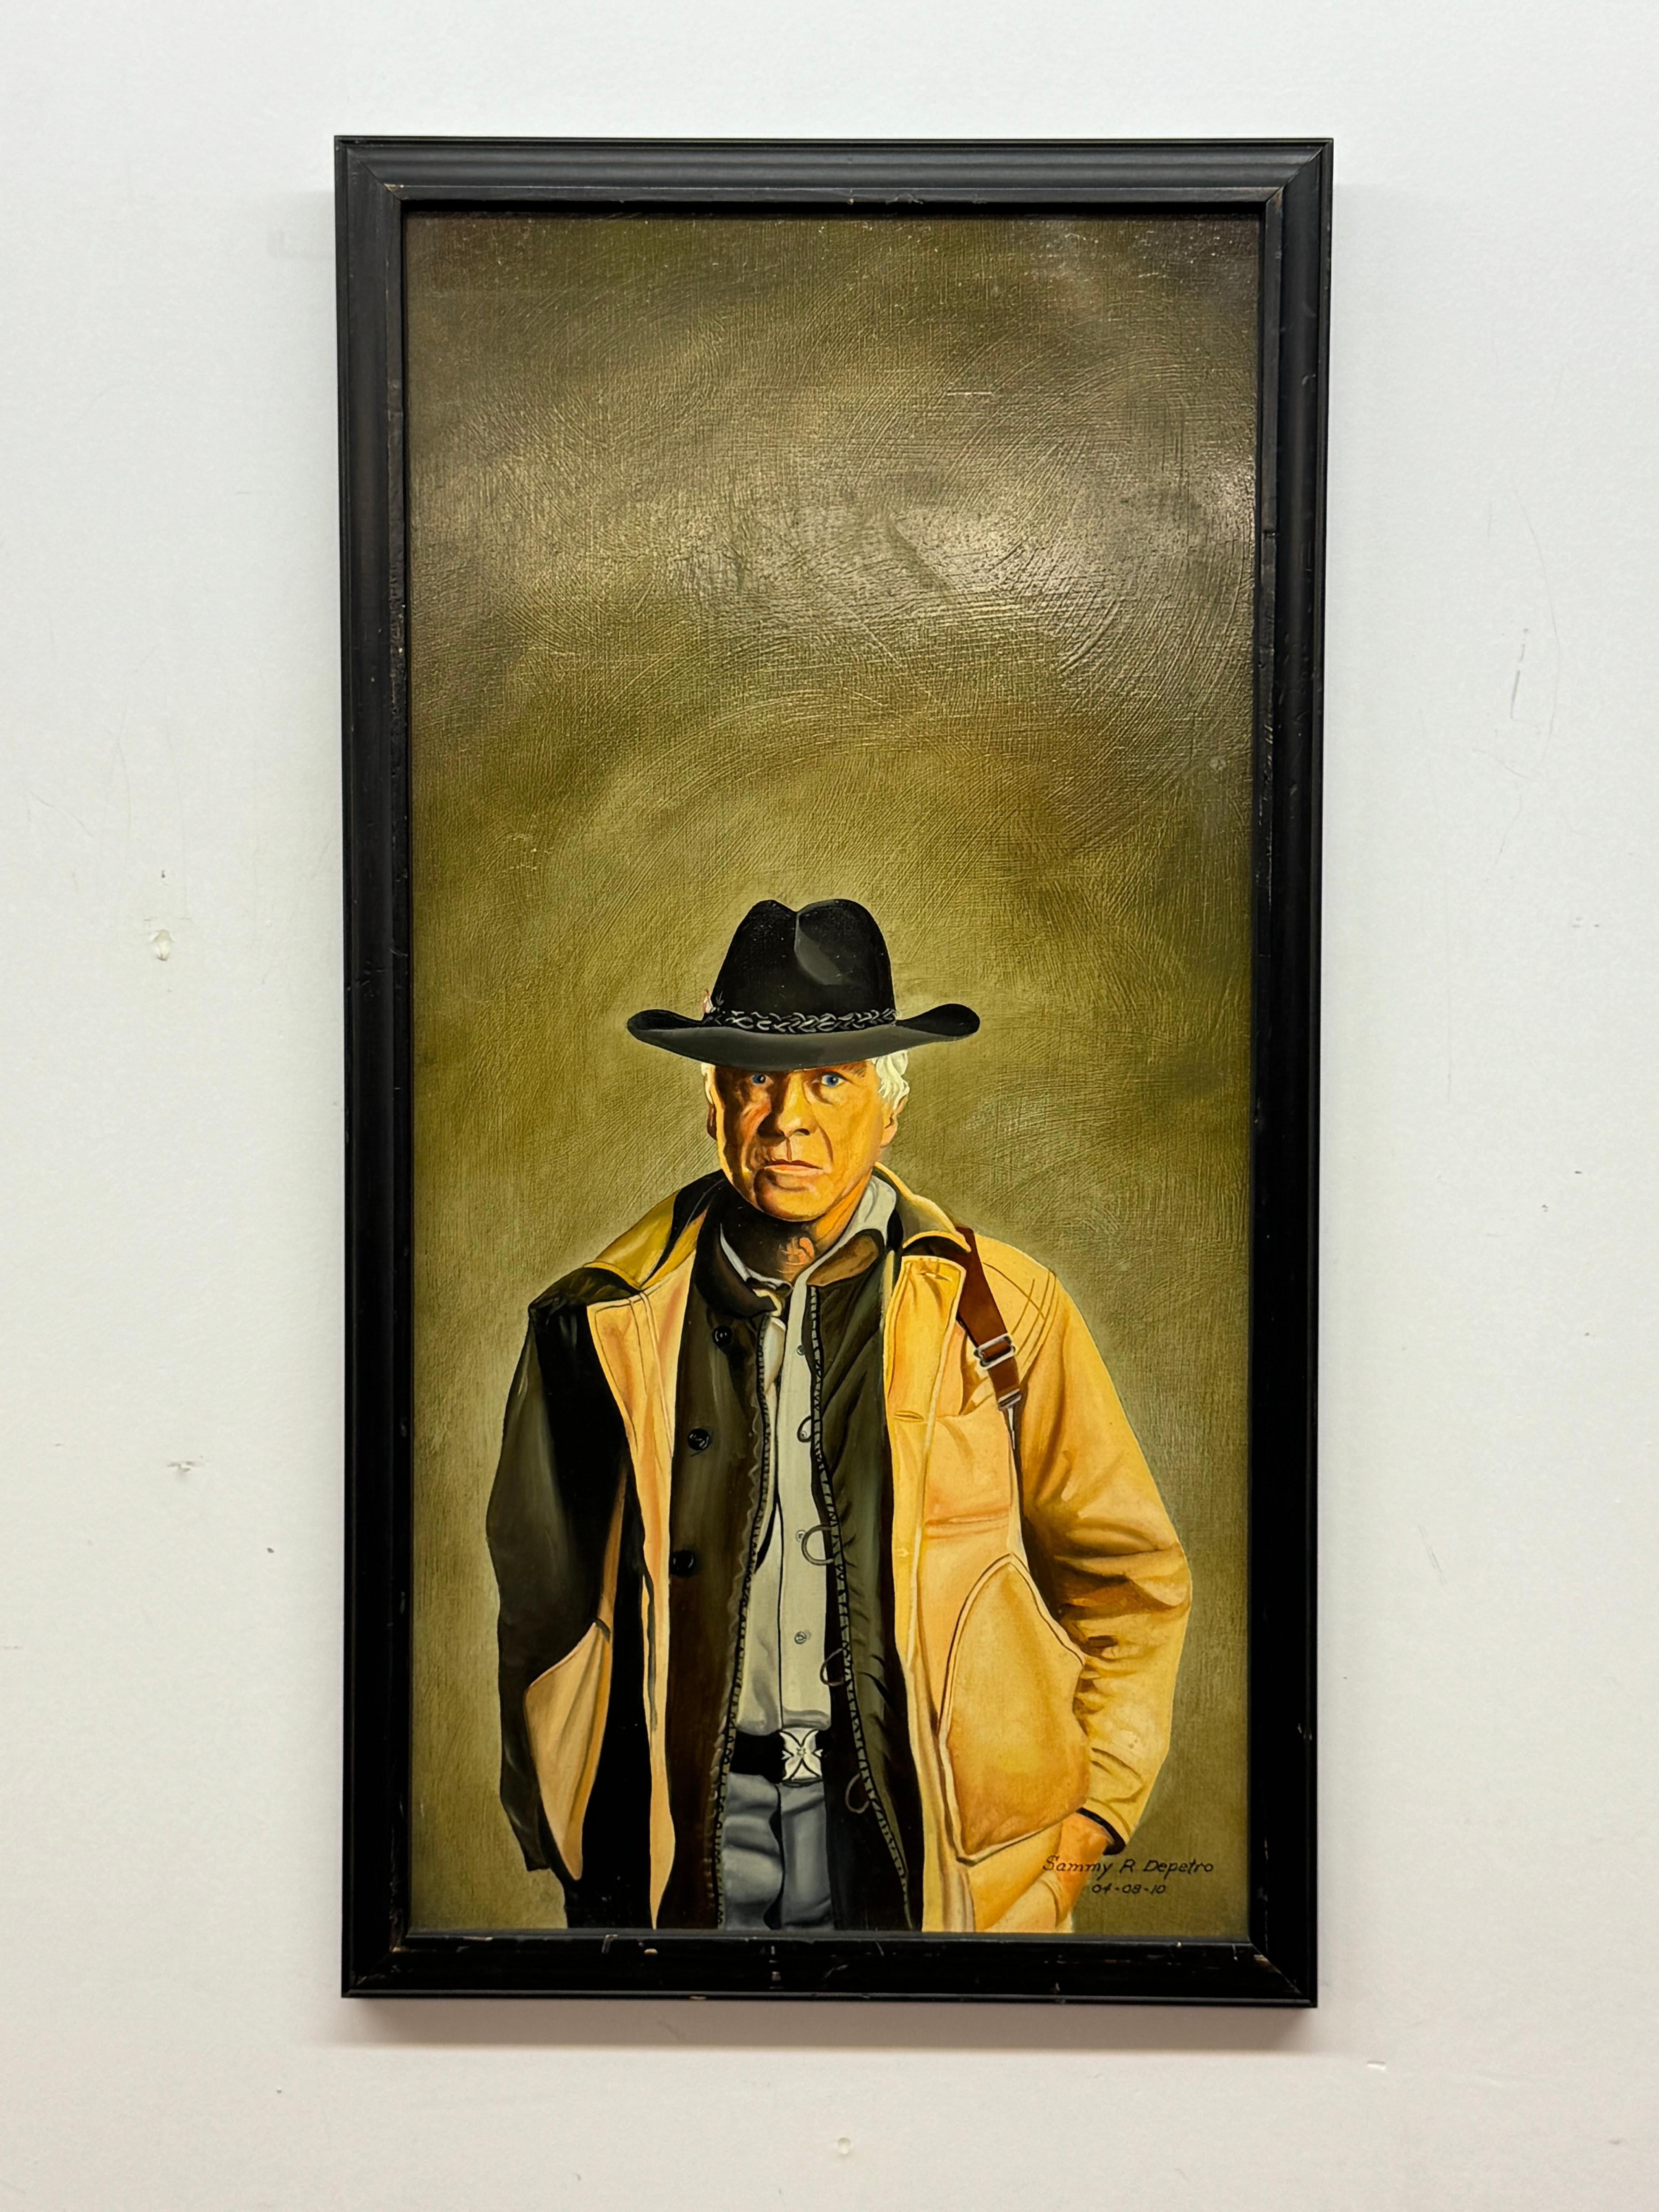 Sammy R Depetro, Portrait d'un gentleman de l'Ouest avec un chapeau de cow-boy

2010 
 
Huile sur toile

10 x 20 sans cadre, 11,25 x 21,25 avec cadre
